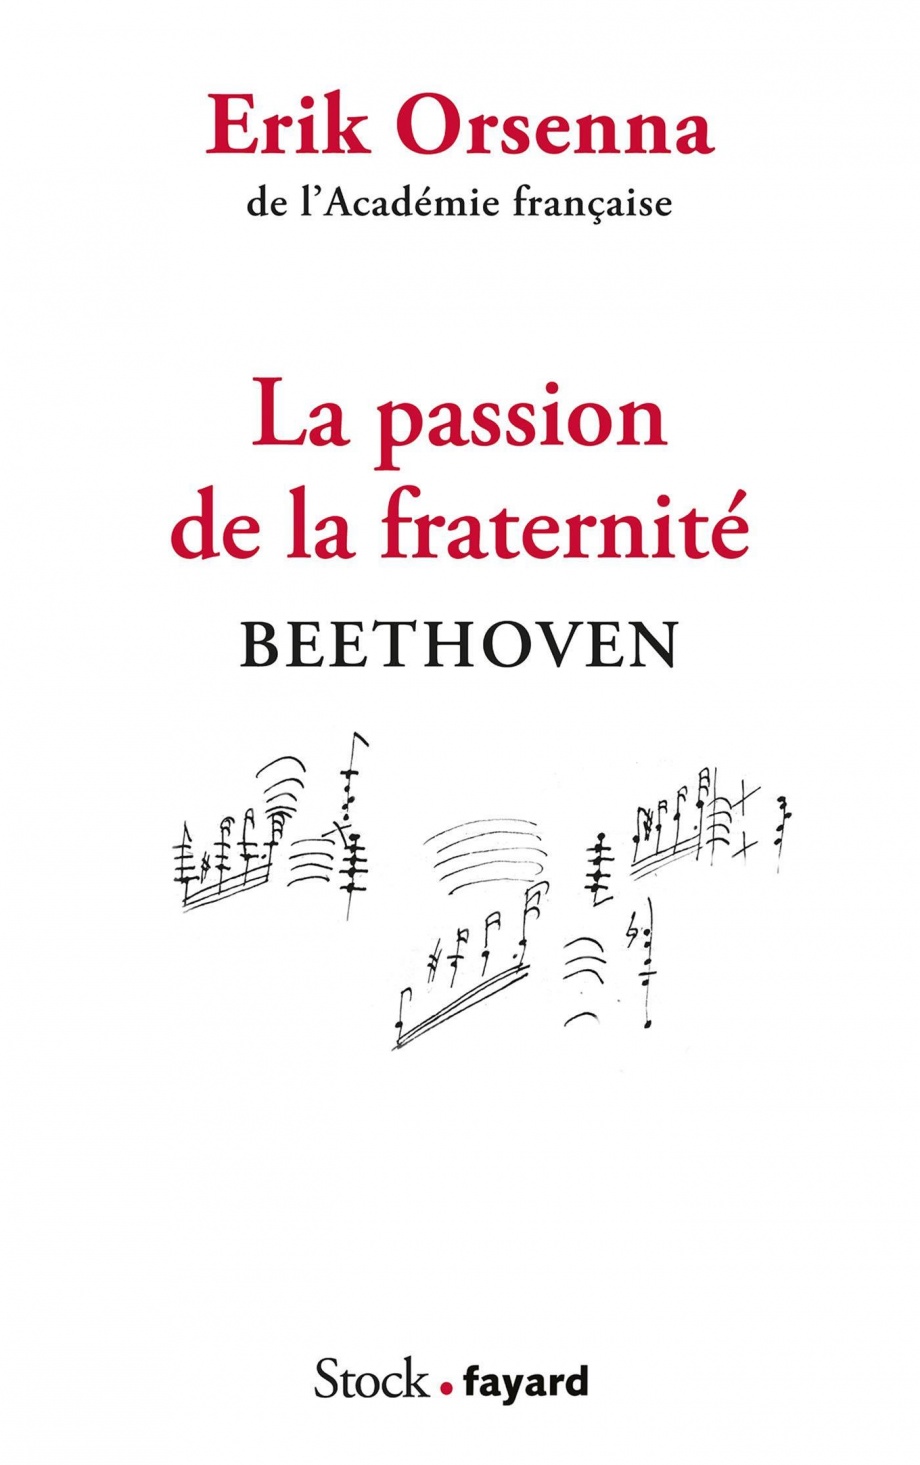 Image La passion de la fraternité : Beethoven